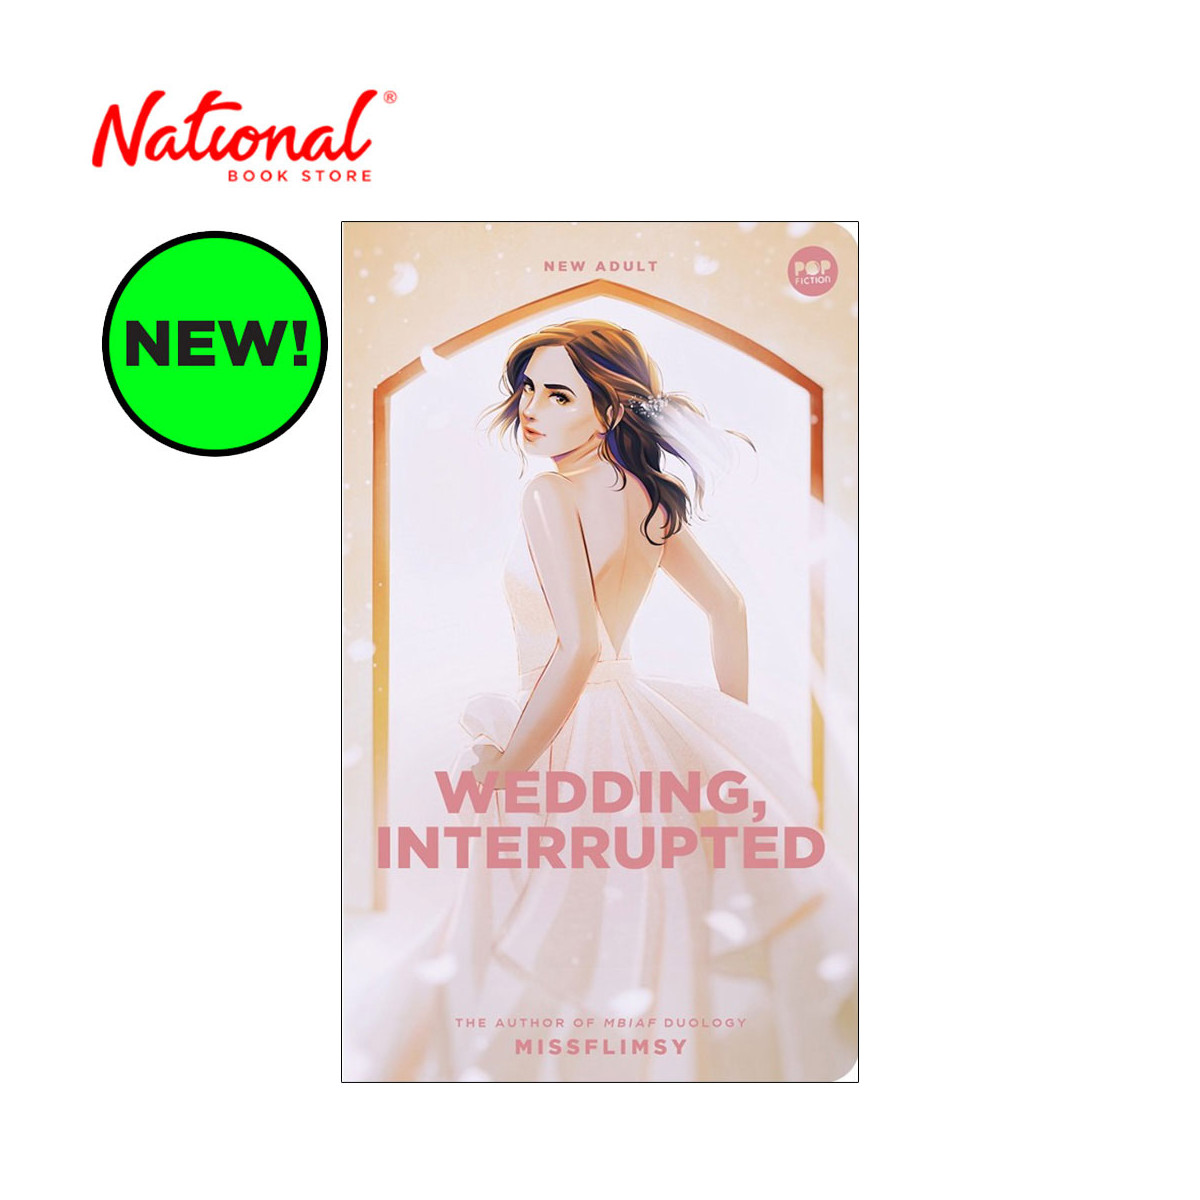 Wedding, Interrupted by Missflimsy - Philippine Fiction & Literature